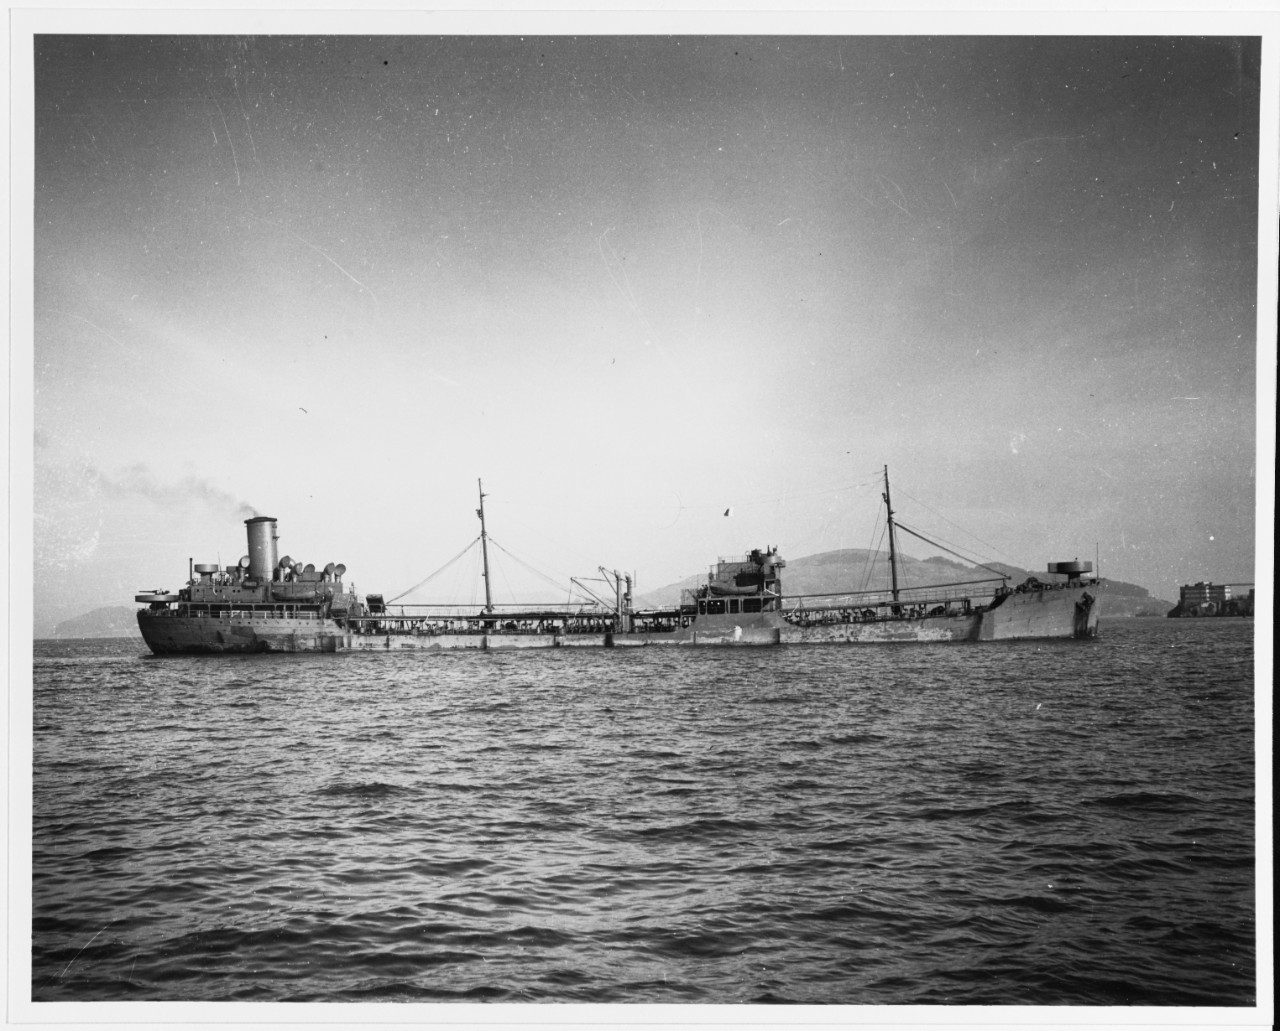 S.S. PAUL M. GREGG (U.S. Merchant Tanker, 1941-1960)